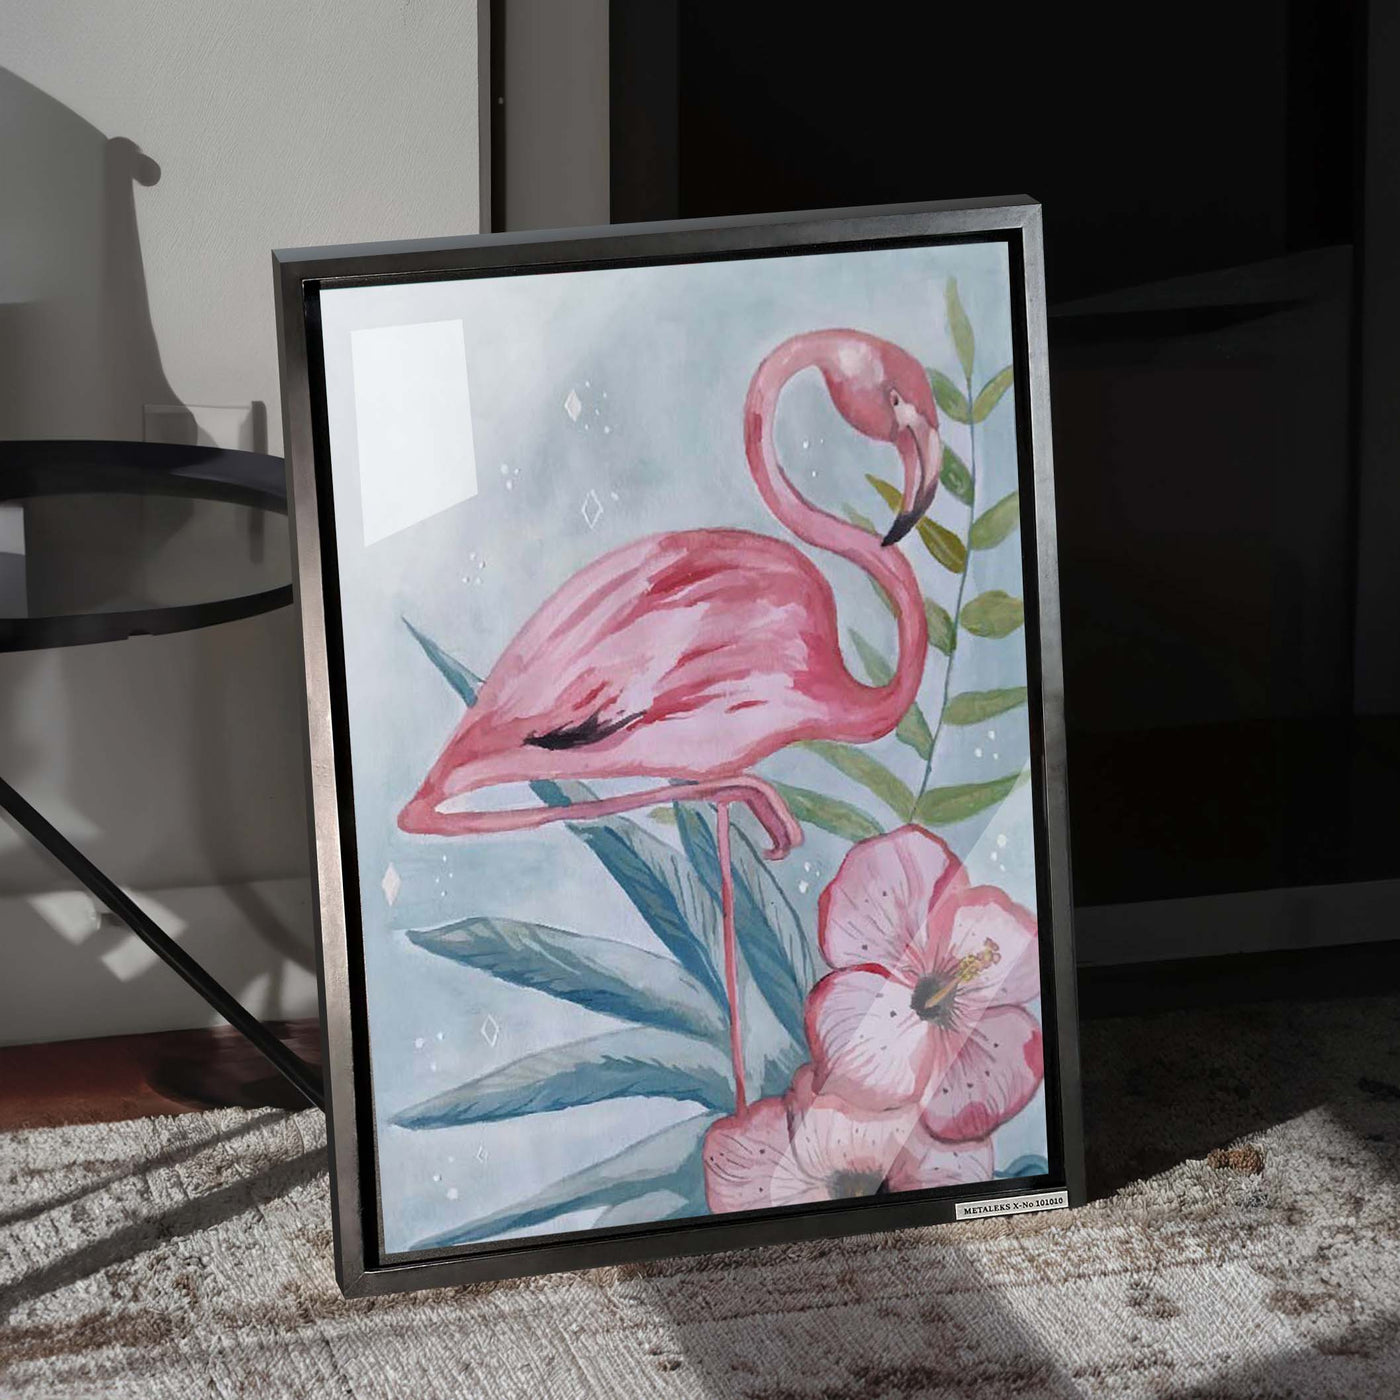 البطريق الوردي - عمل فني بواسطة katysart.artis